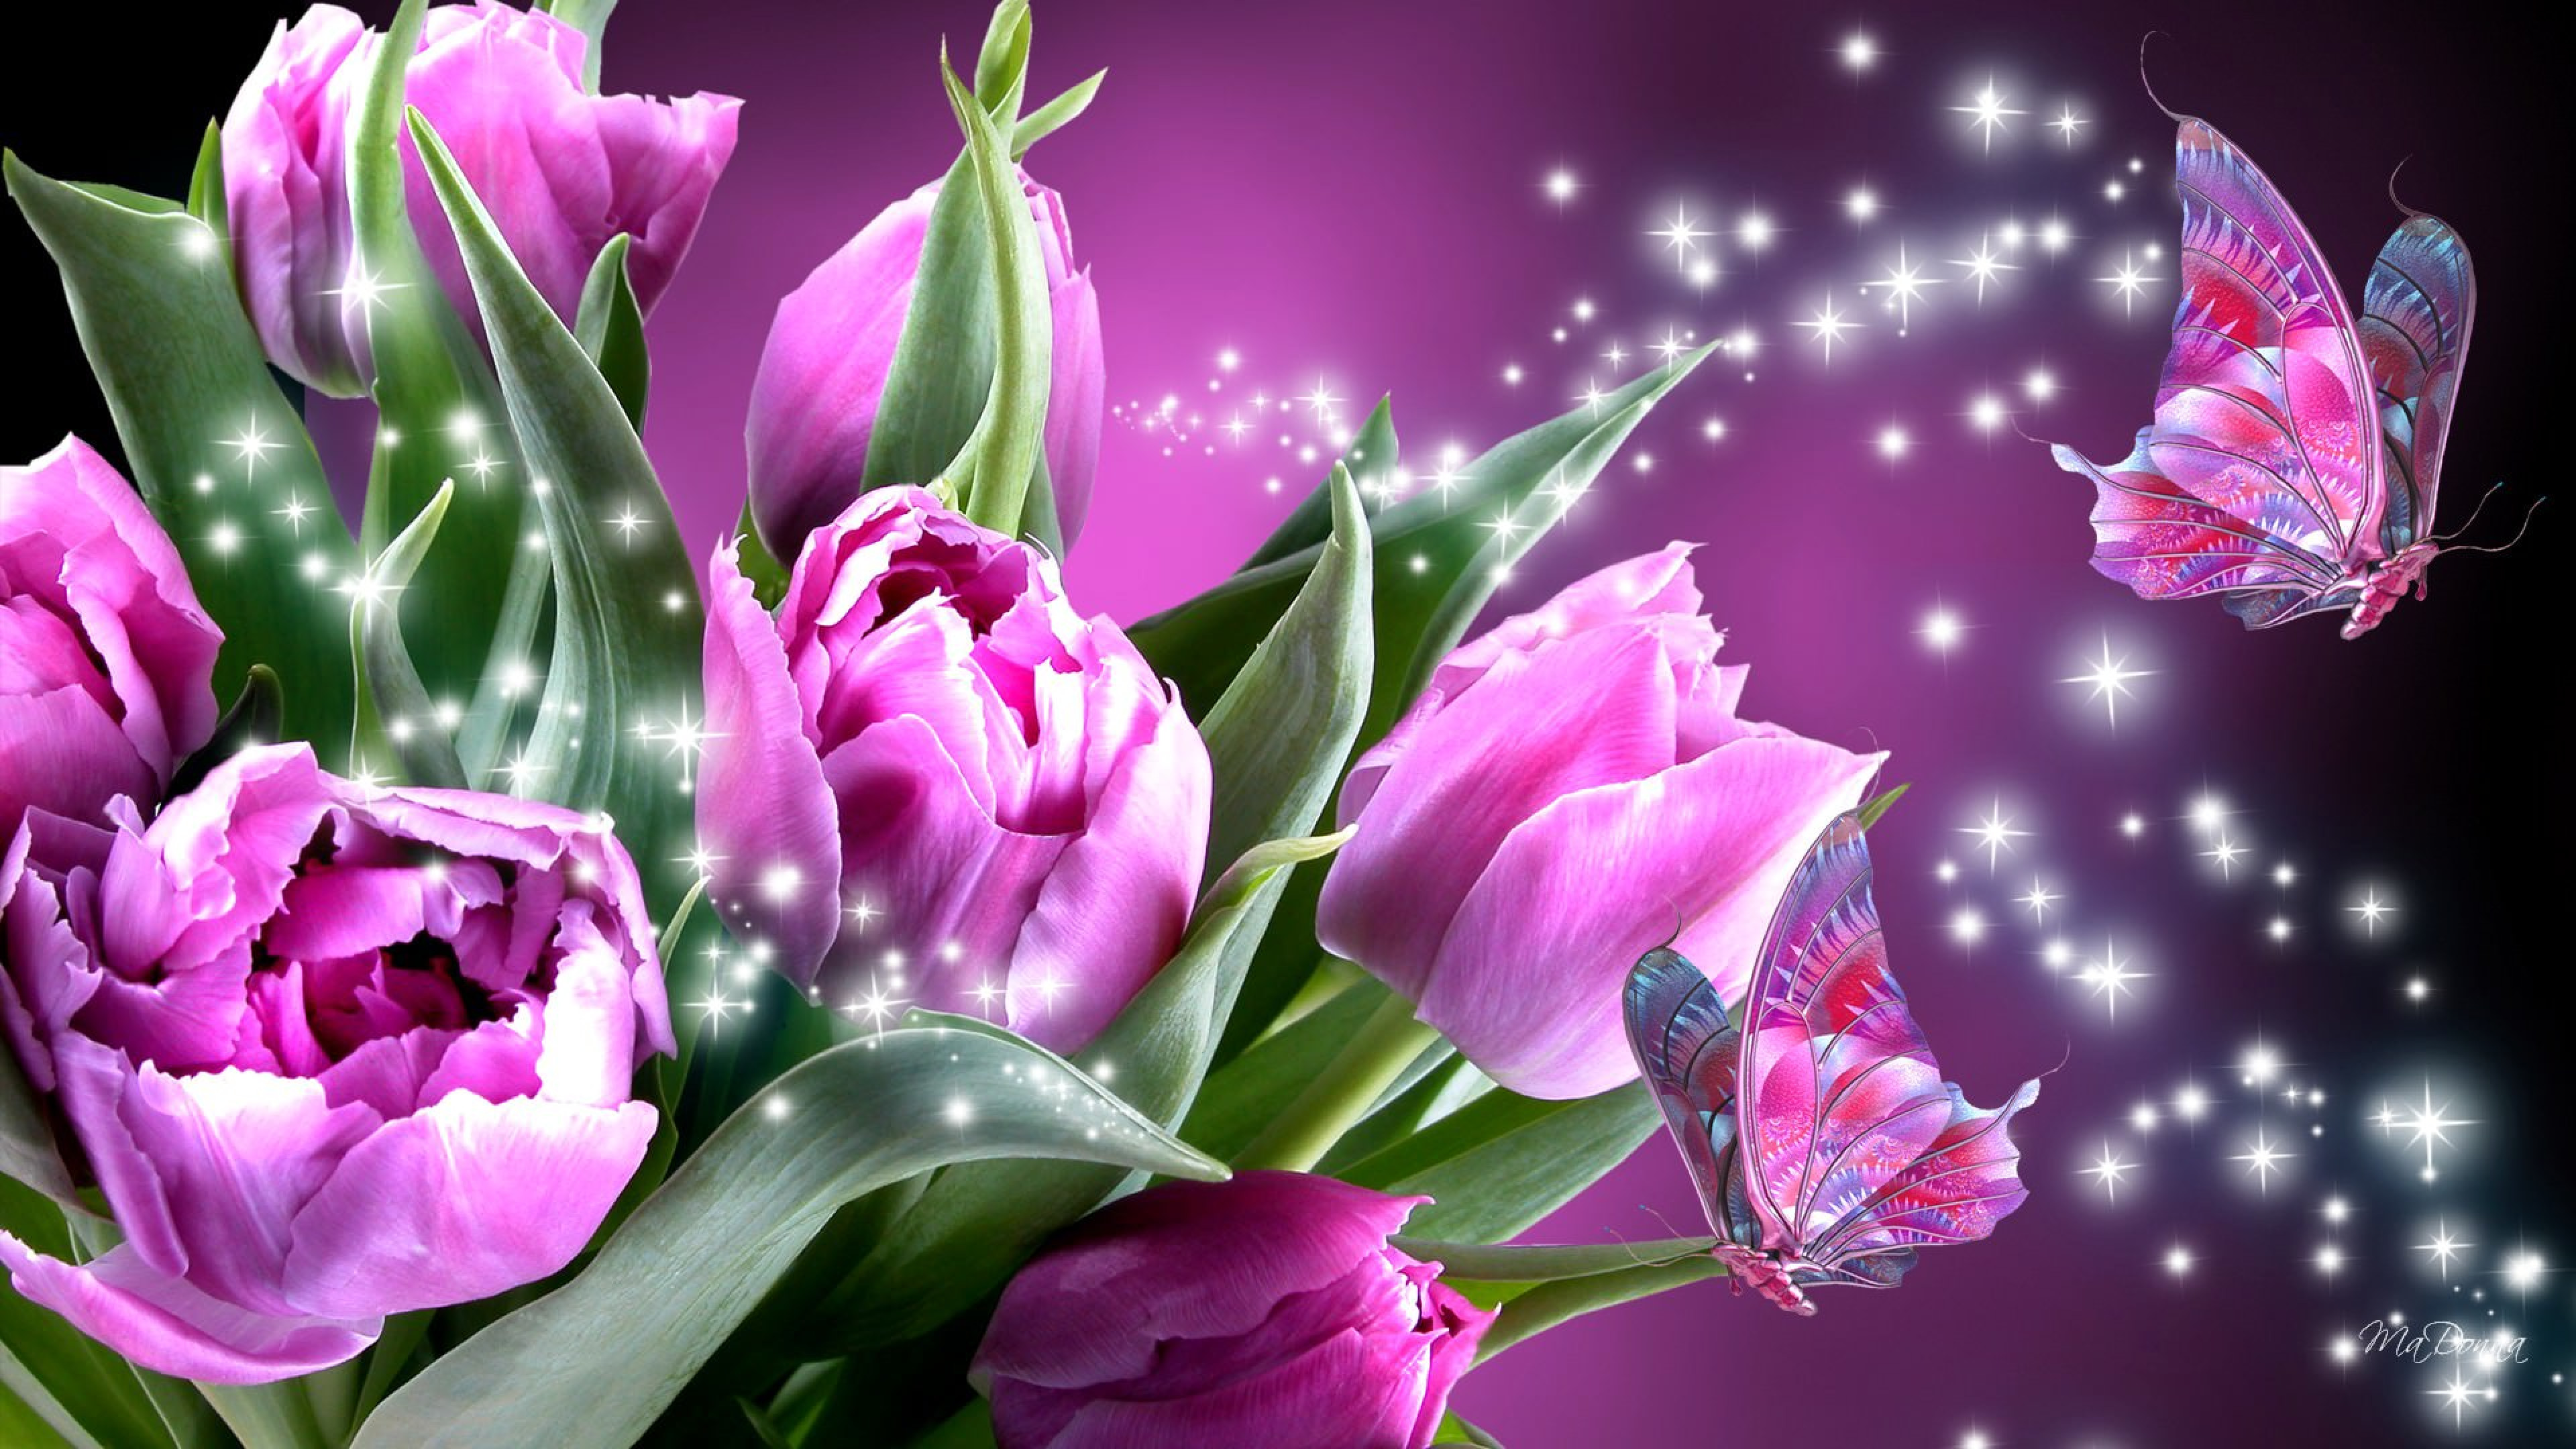 Картинки на телефон на заставку красивые живые. Шикарные тюльпаны. Весенние цветы тюльпаны. Розовые тюльпаны. Цветы на заставку.